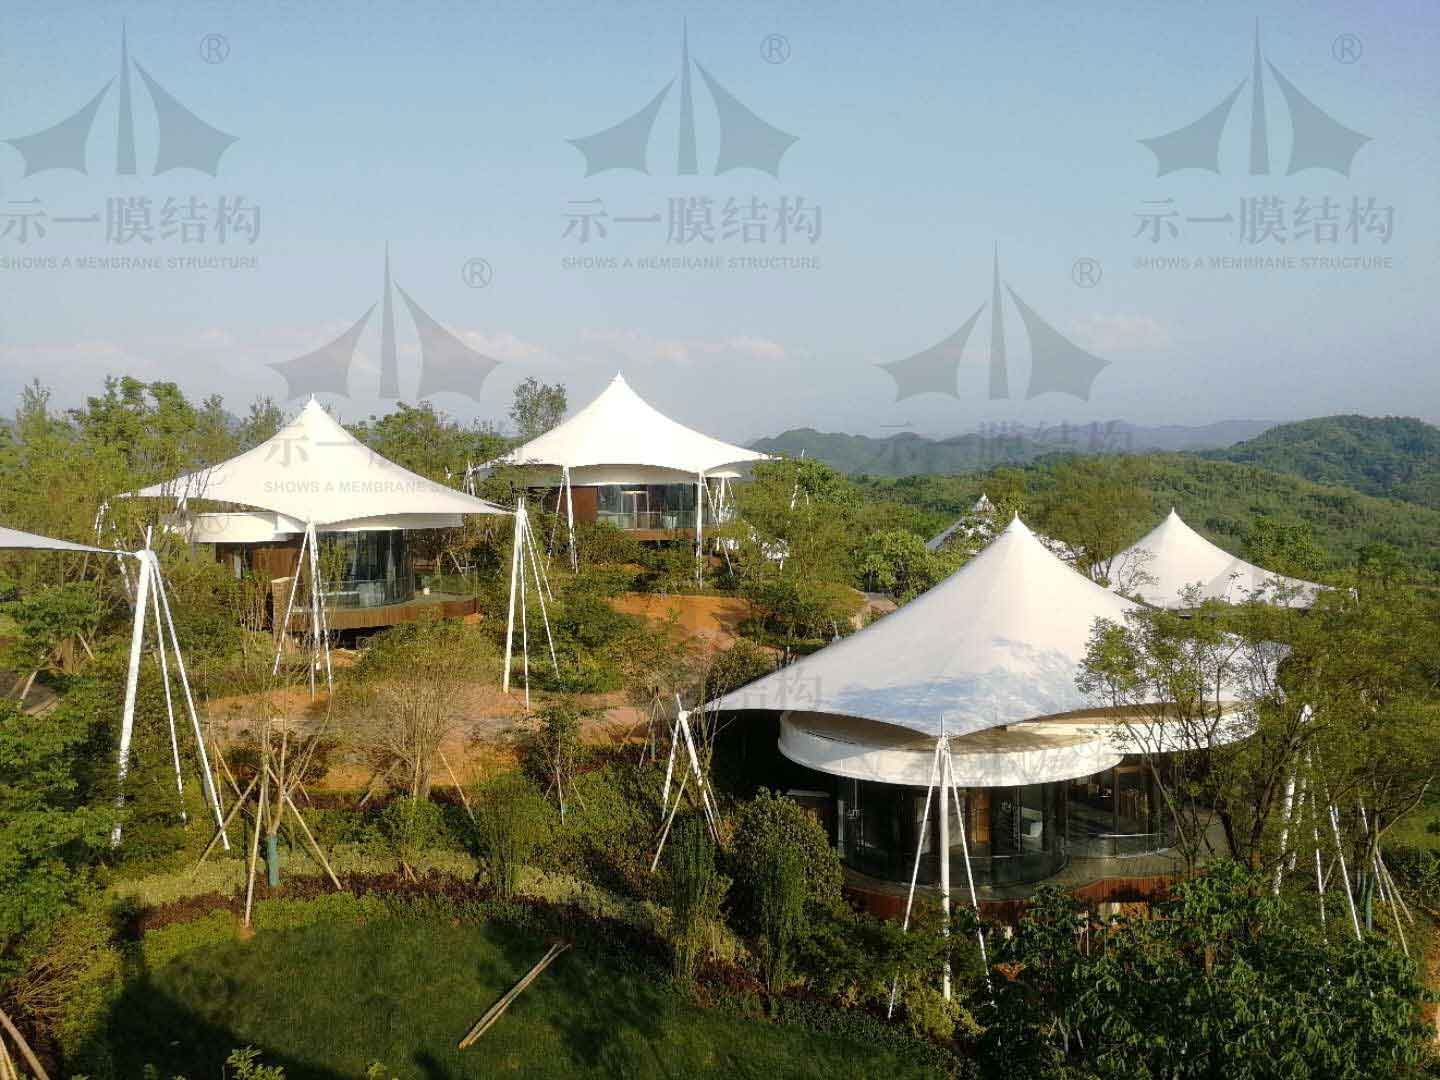 上海示一膜结构诸暨度假山庄膜结构遮阳帐篷